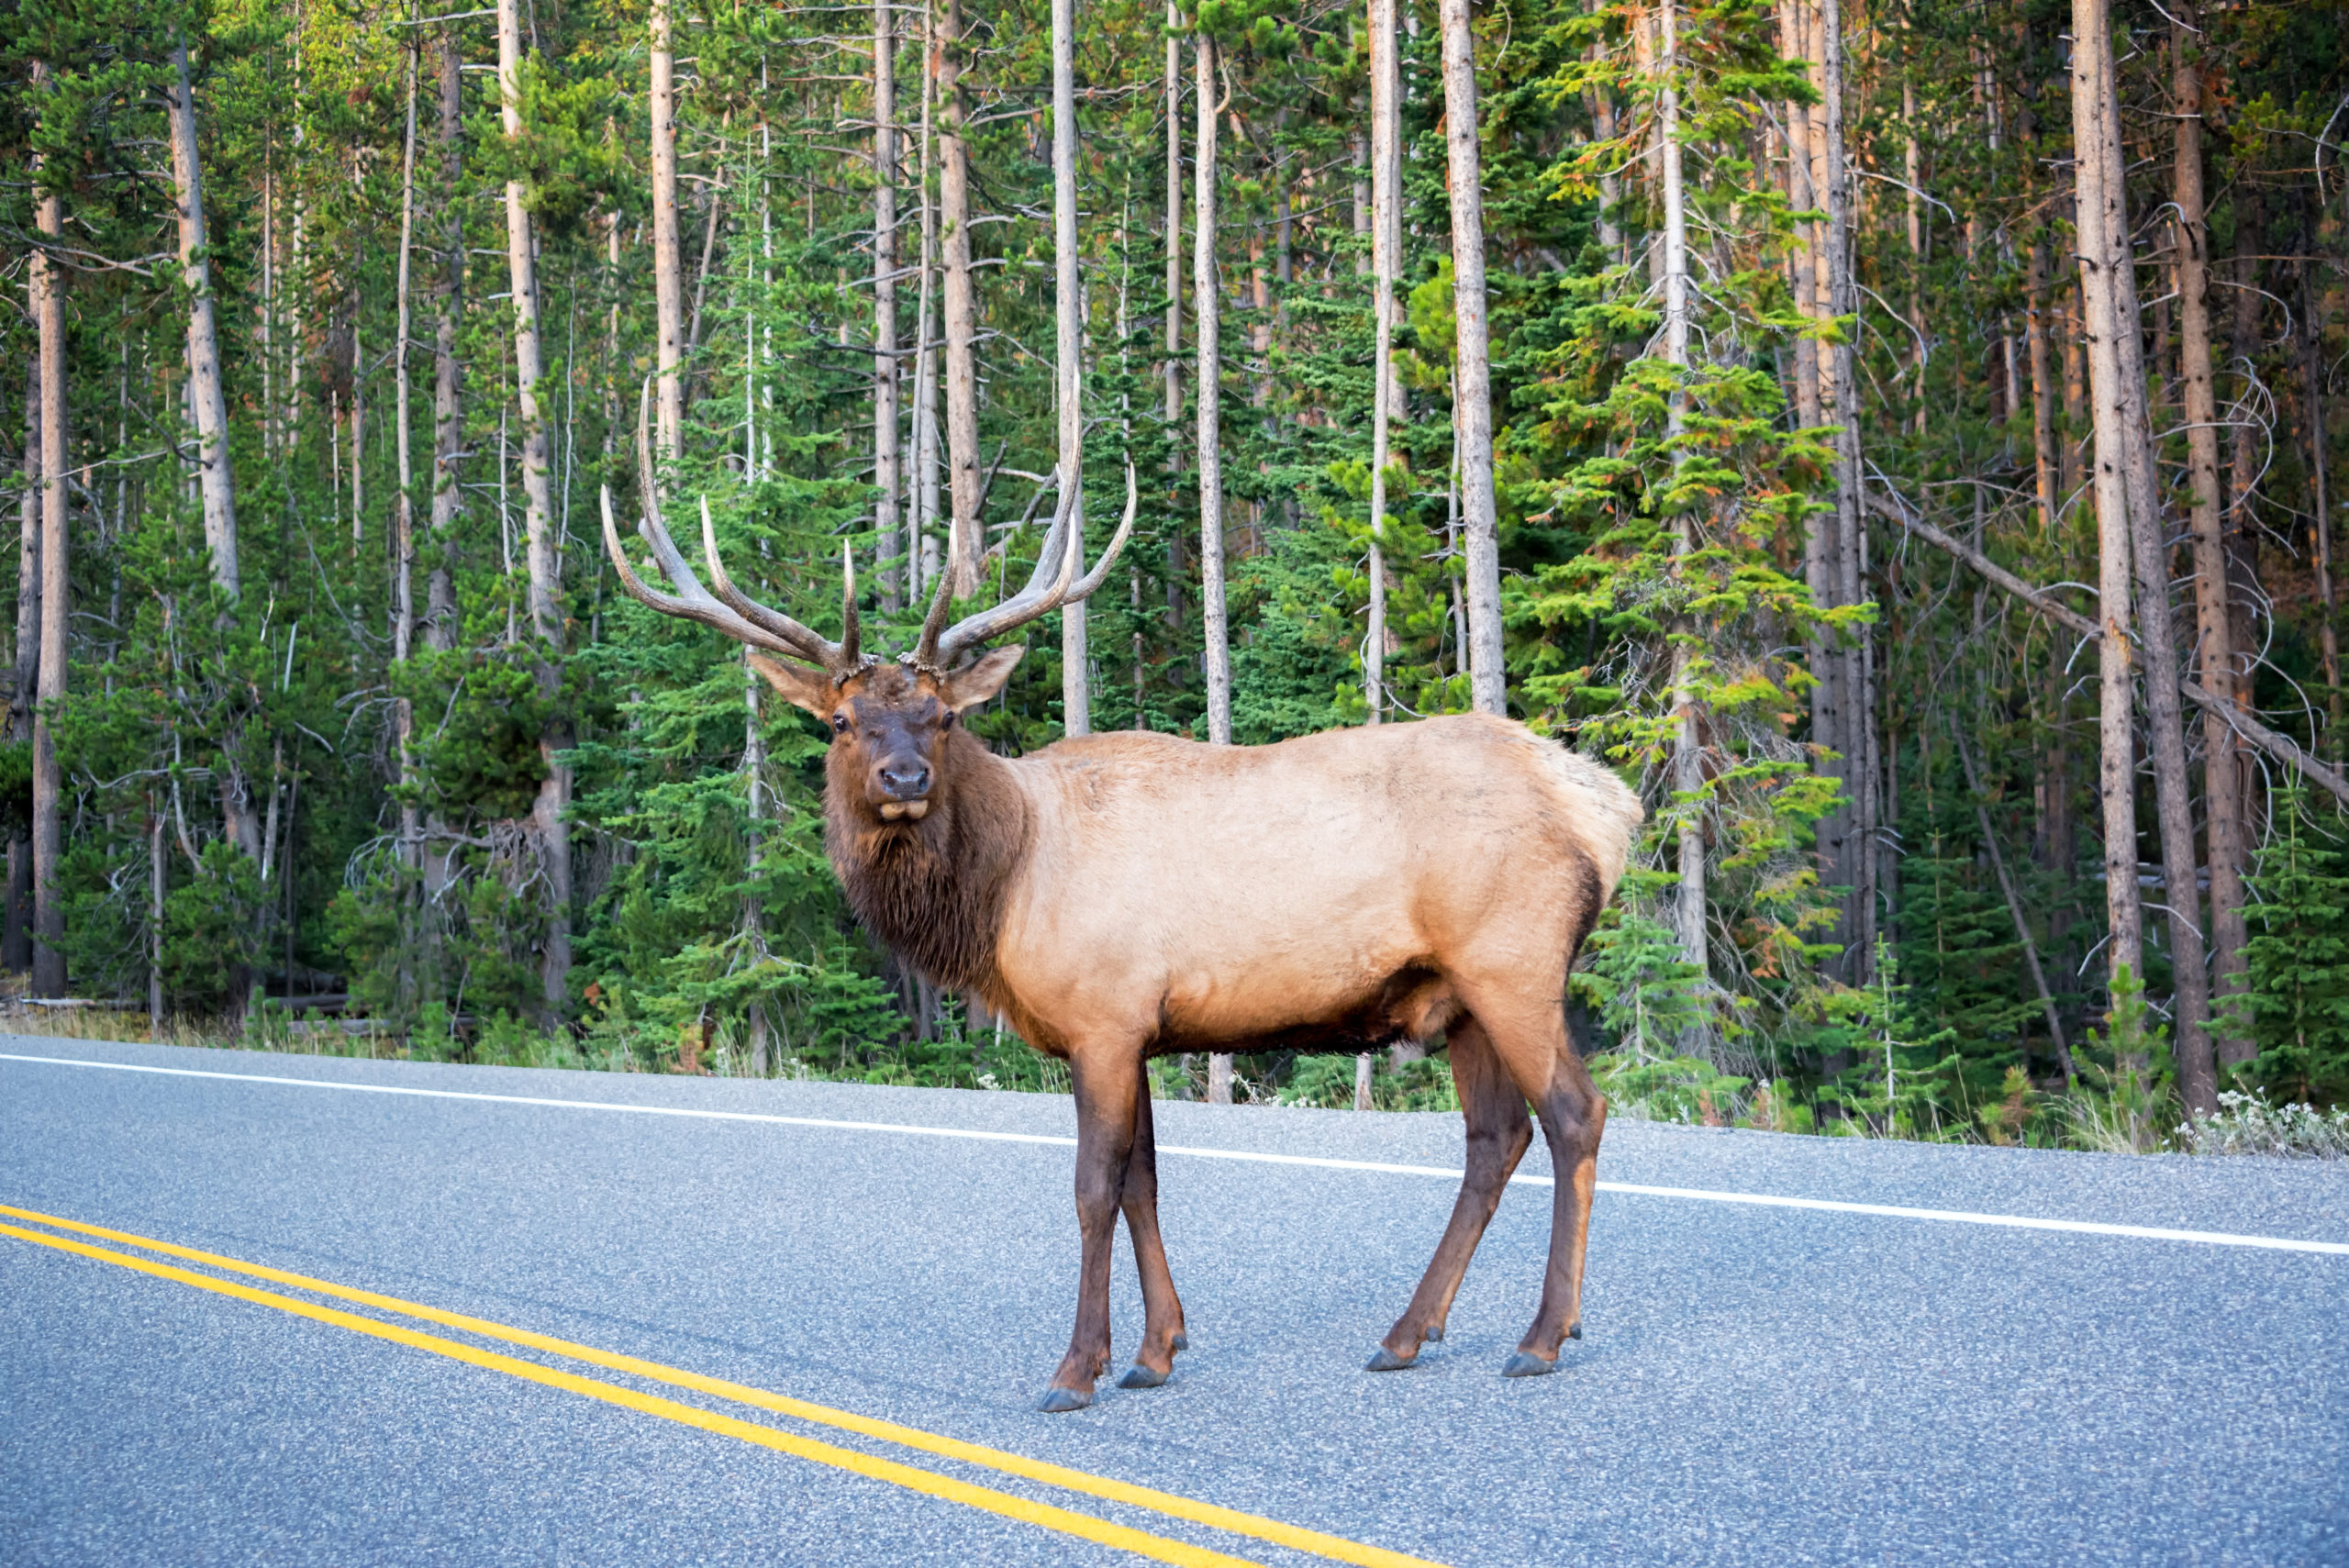 Elk crossing a road